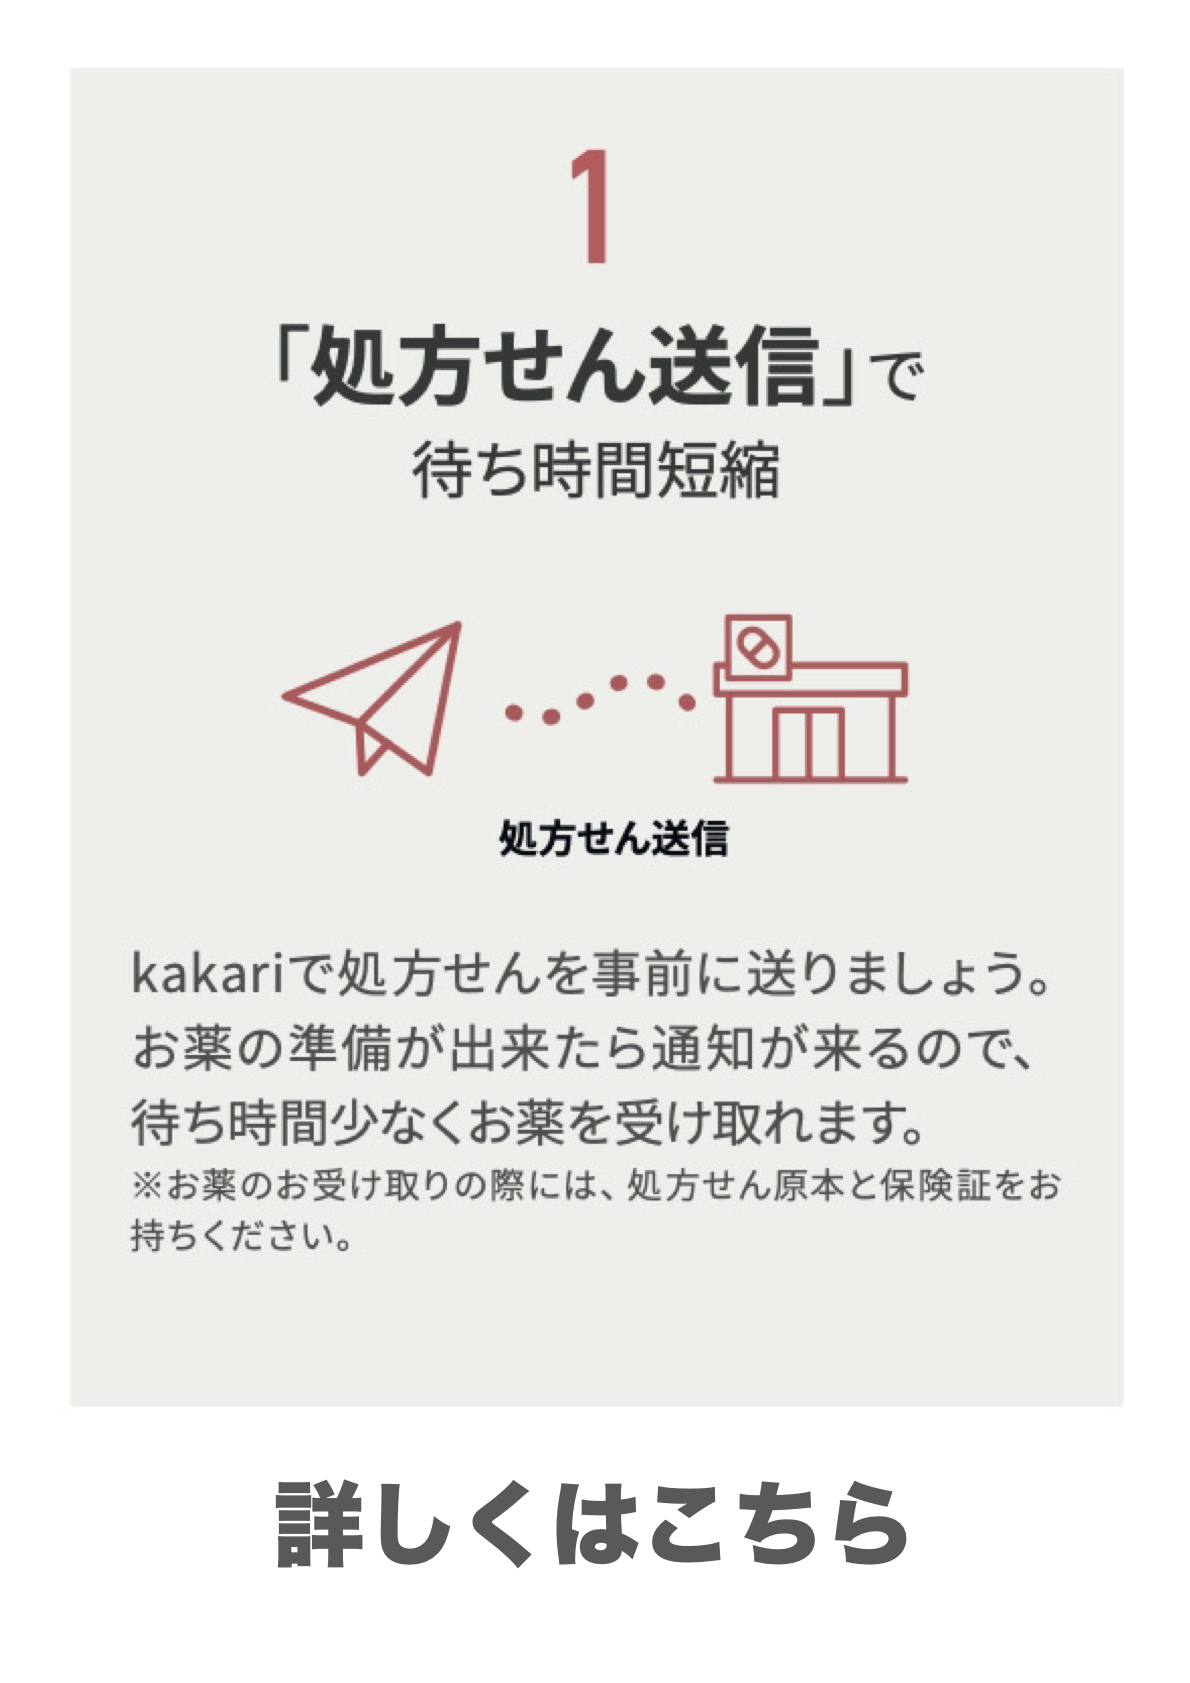 処方せん送信&お薬手帳アプリ(Kakari)の機能1